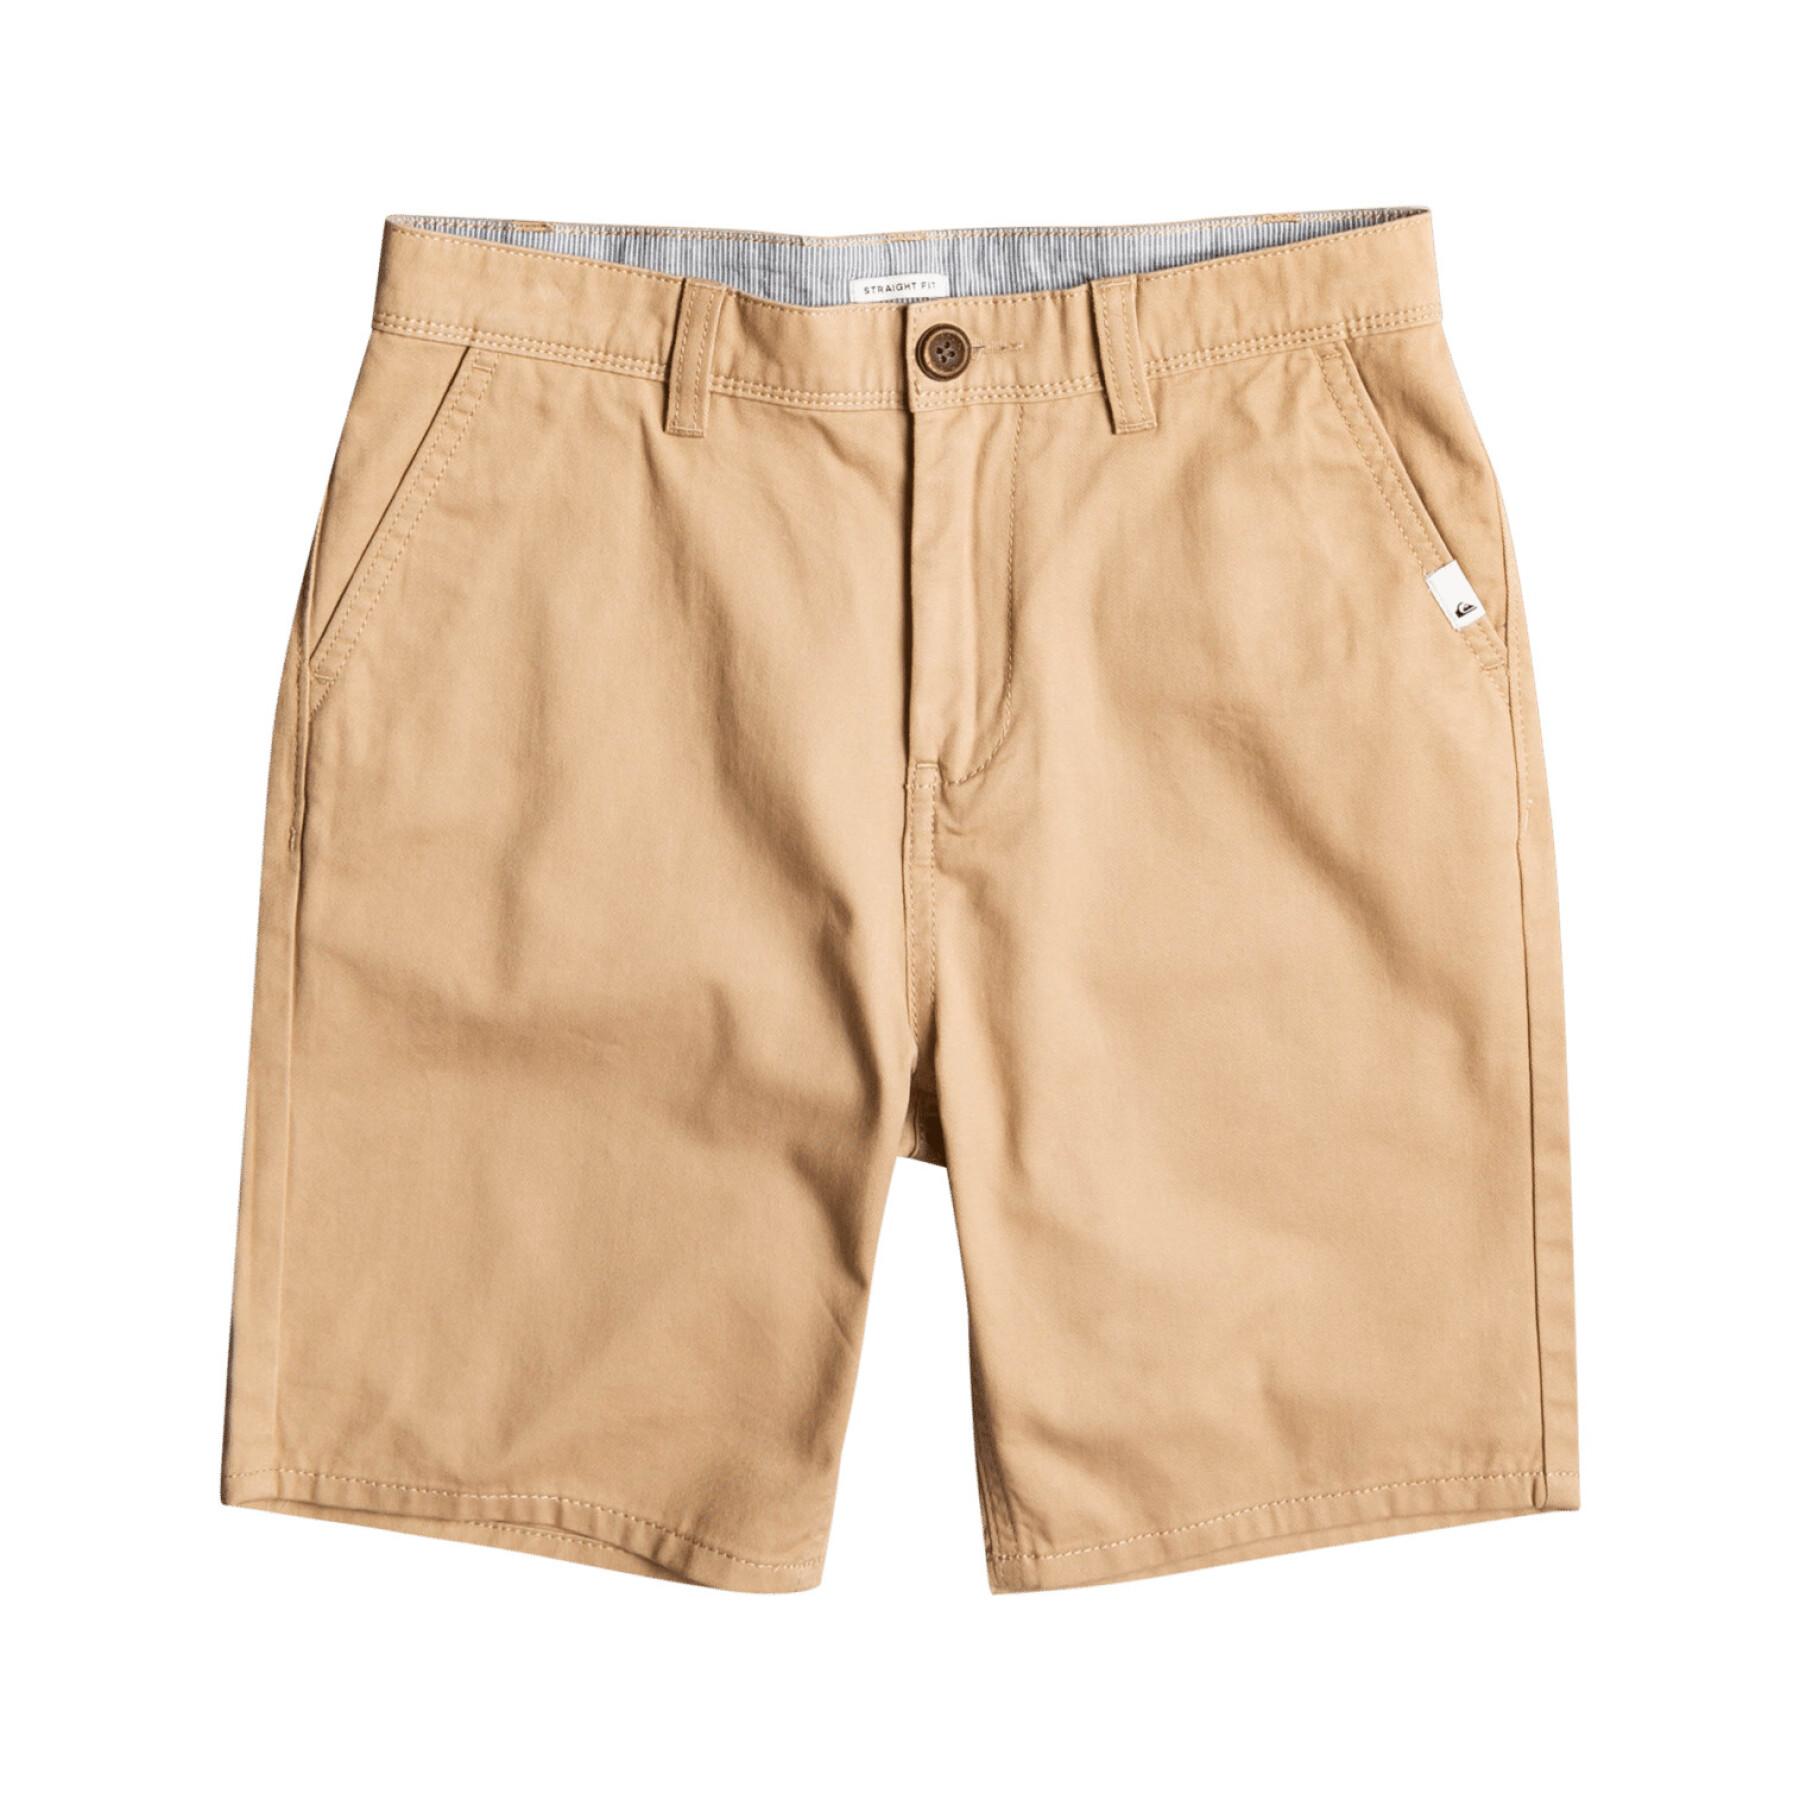 Leichte Chino-Shorts für Kinder Quiksilver Everyday